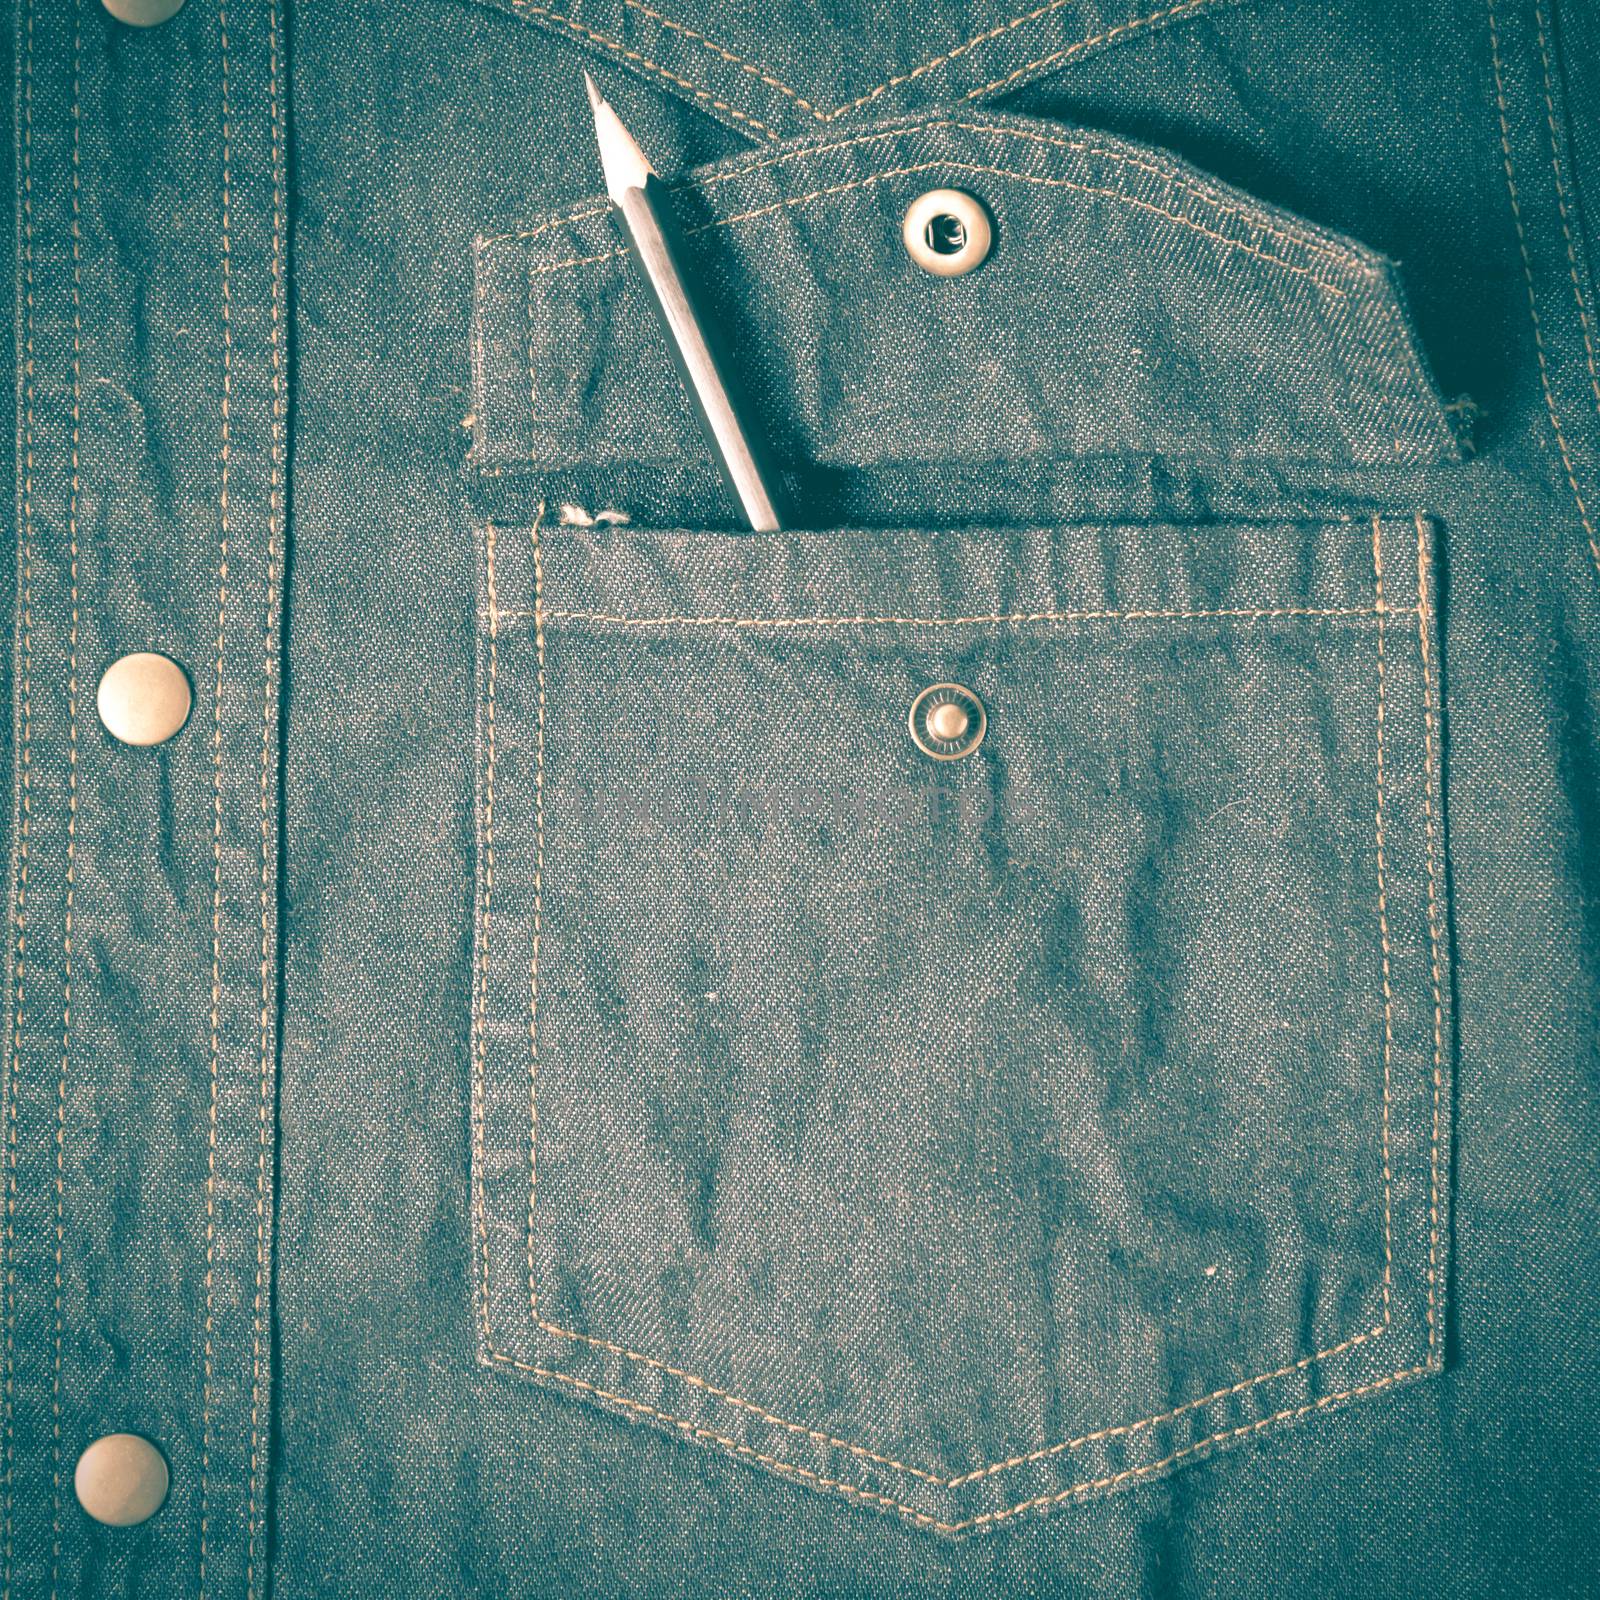 pencil in jean pocket retro vintage style